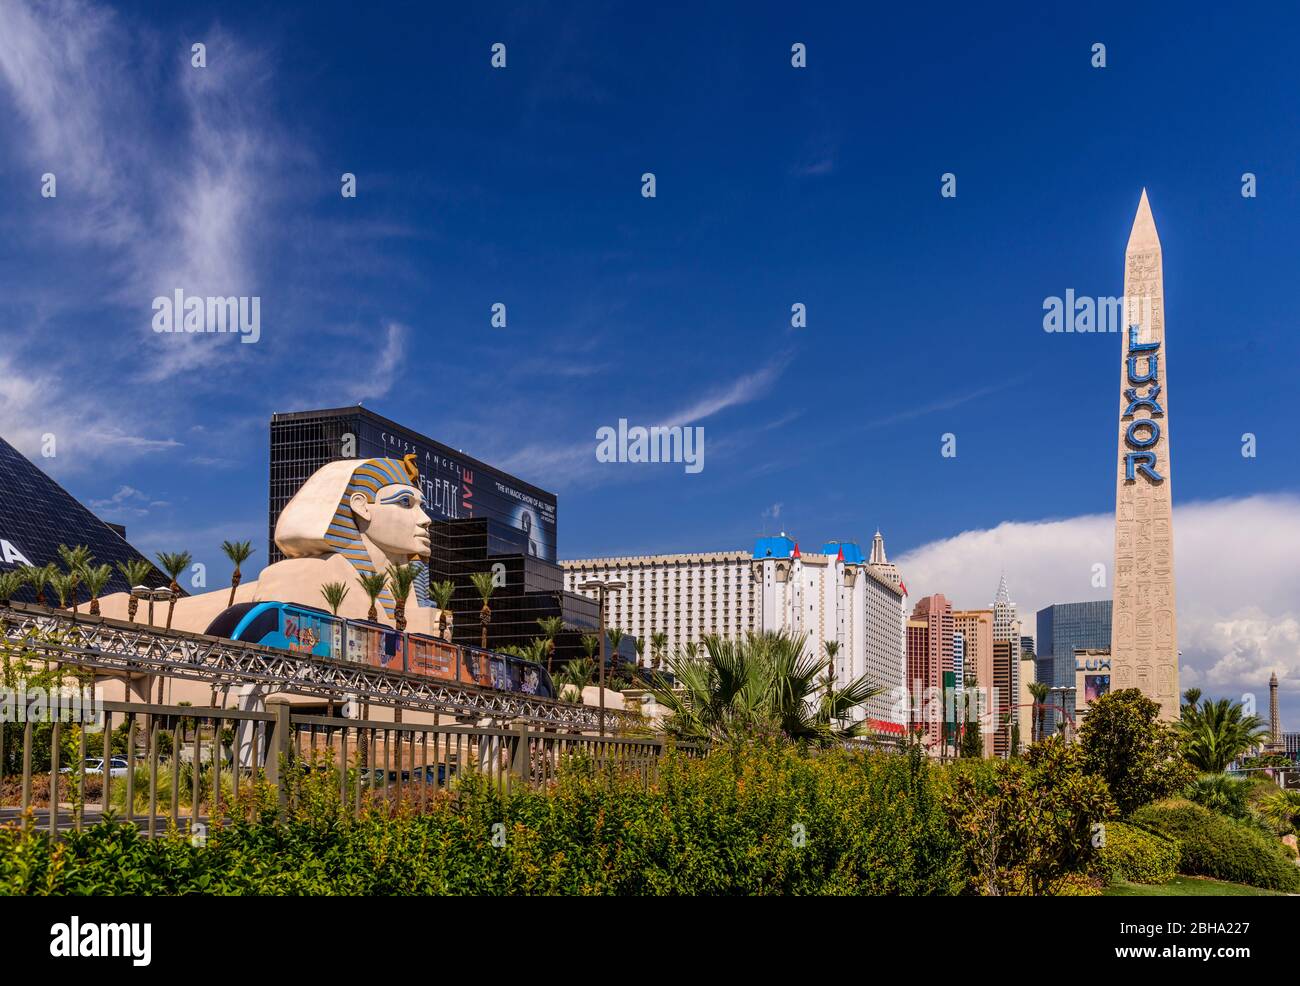 Estados Unidos, Nevada, Condado de Clark, las Vegas, las Vegas Boulevard, The Strip, Luxor Hotel and Casino, Sphinx und Obelisk Foto de stock